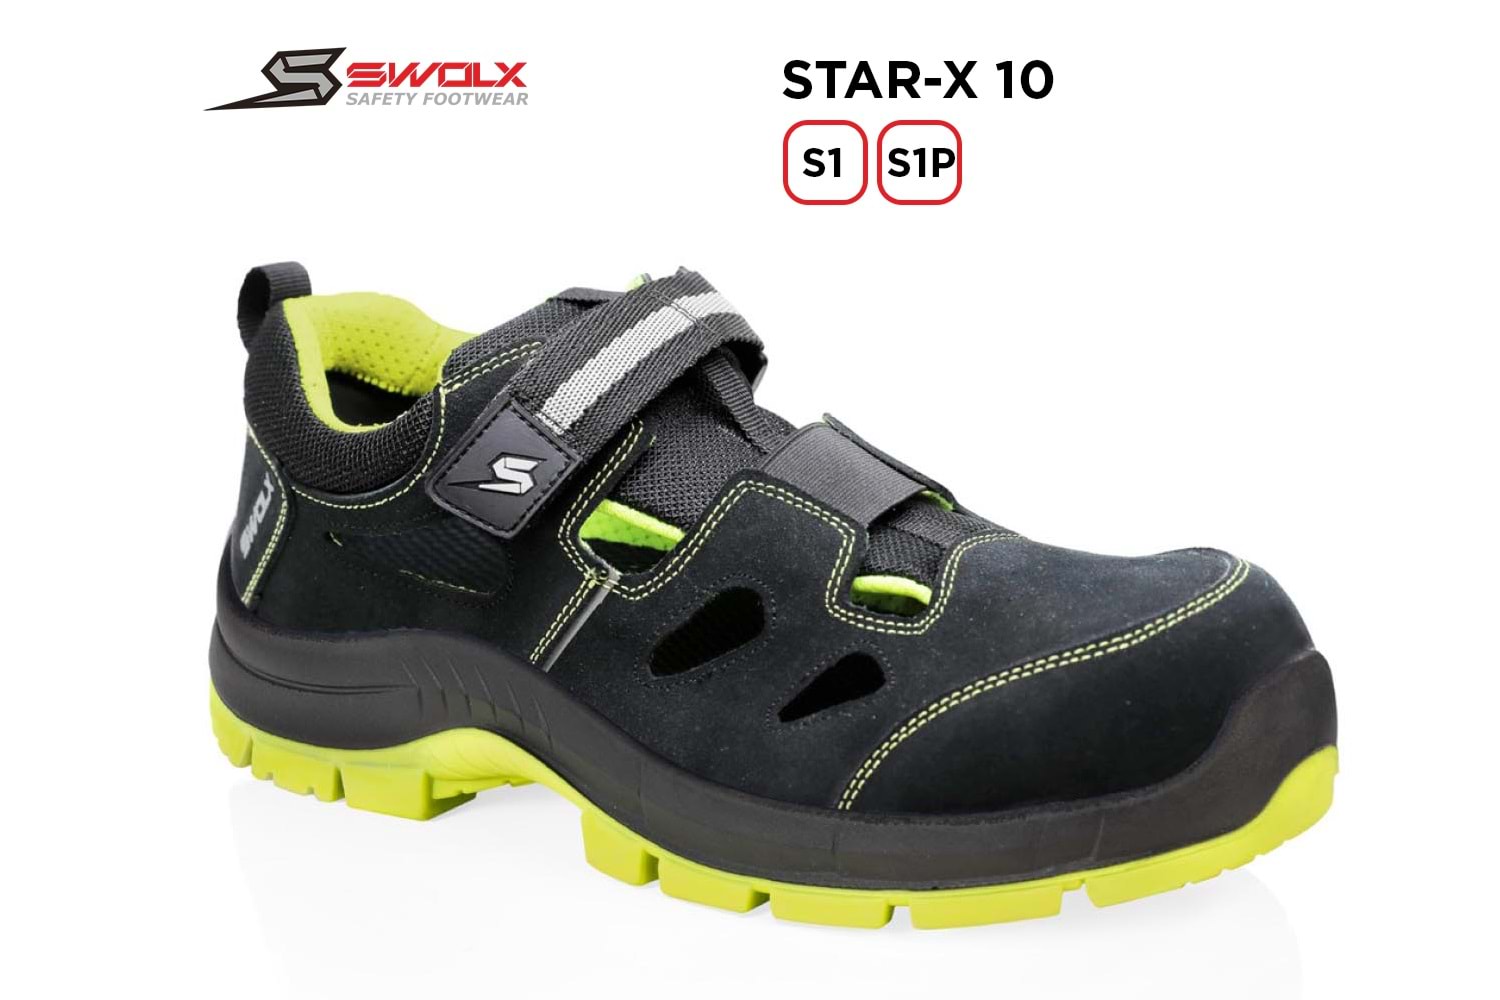 Swolx İş Ayakkabısı - Star-X 10 S1P - 38